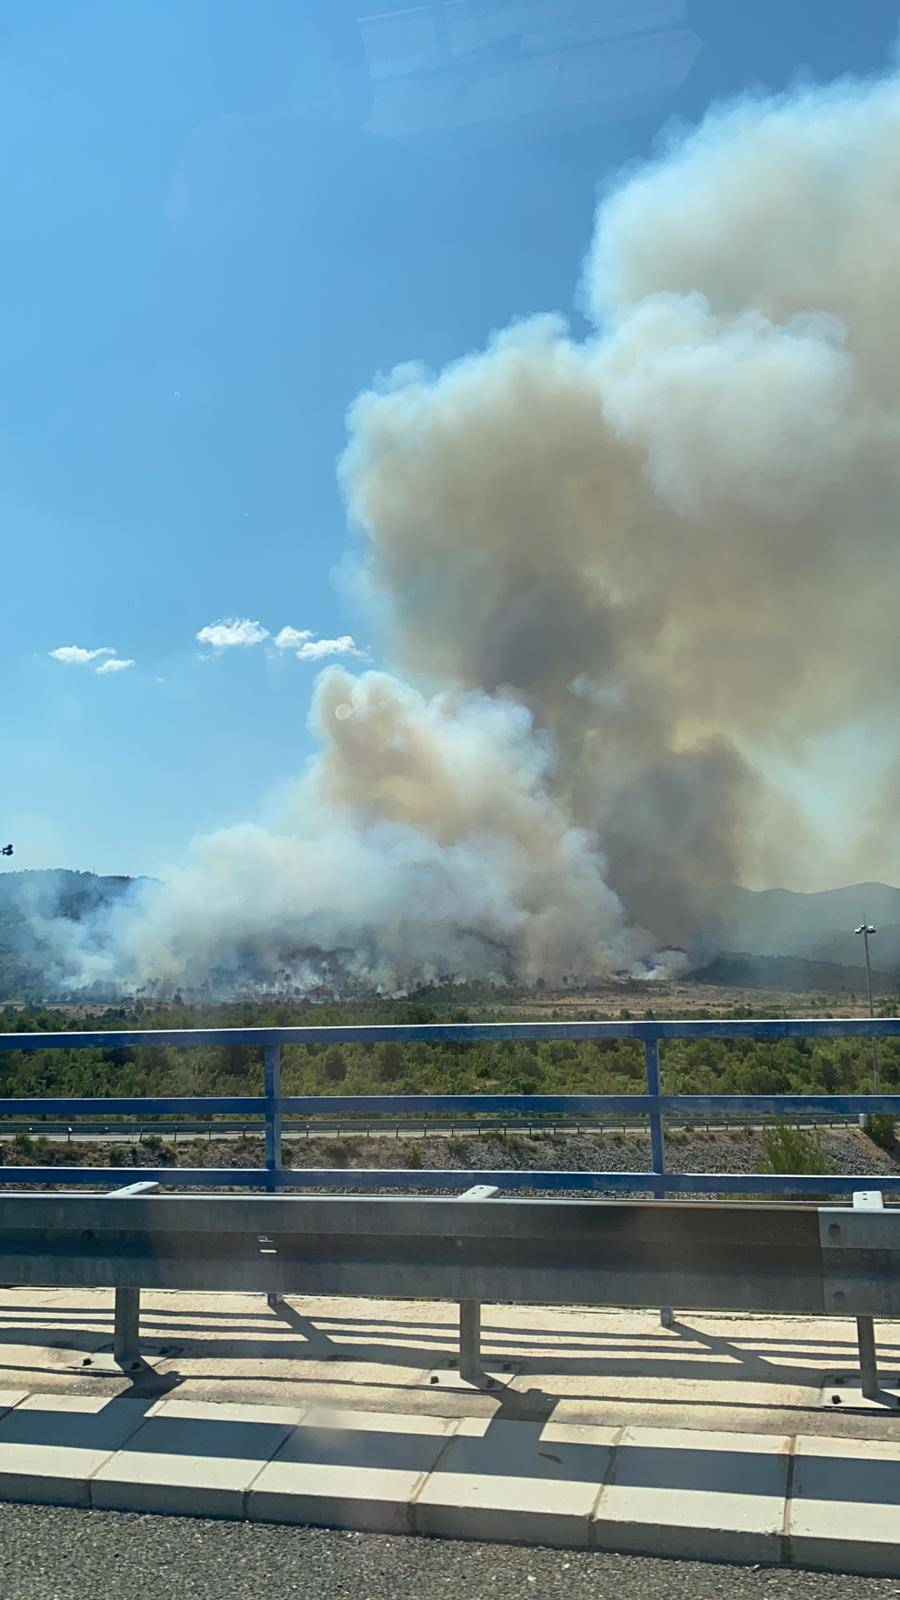 Vatrogasci i dalje pokušavaju obuzdati požar kod Vrpolja: Na teren je došao i vatrogasni vlak